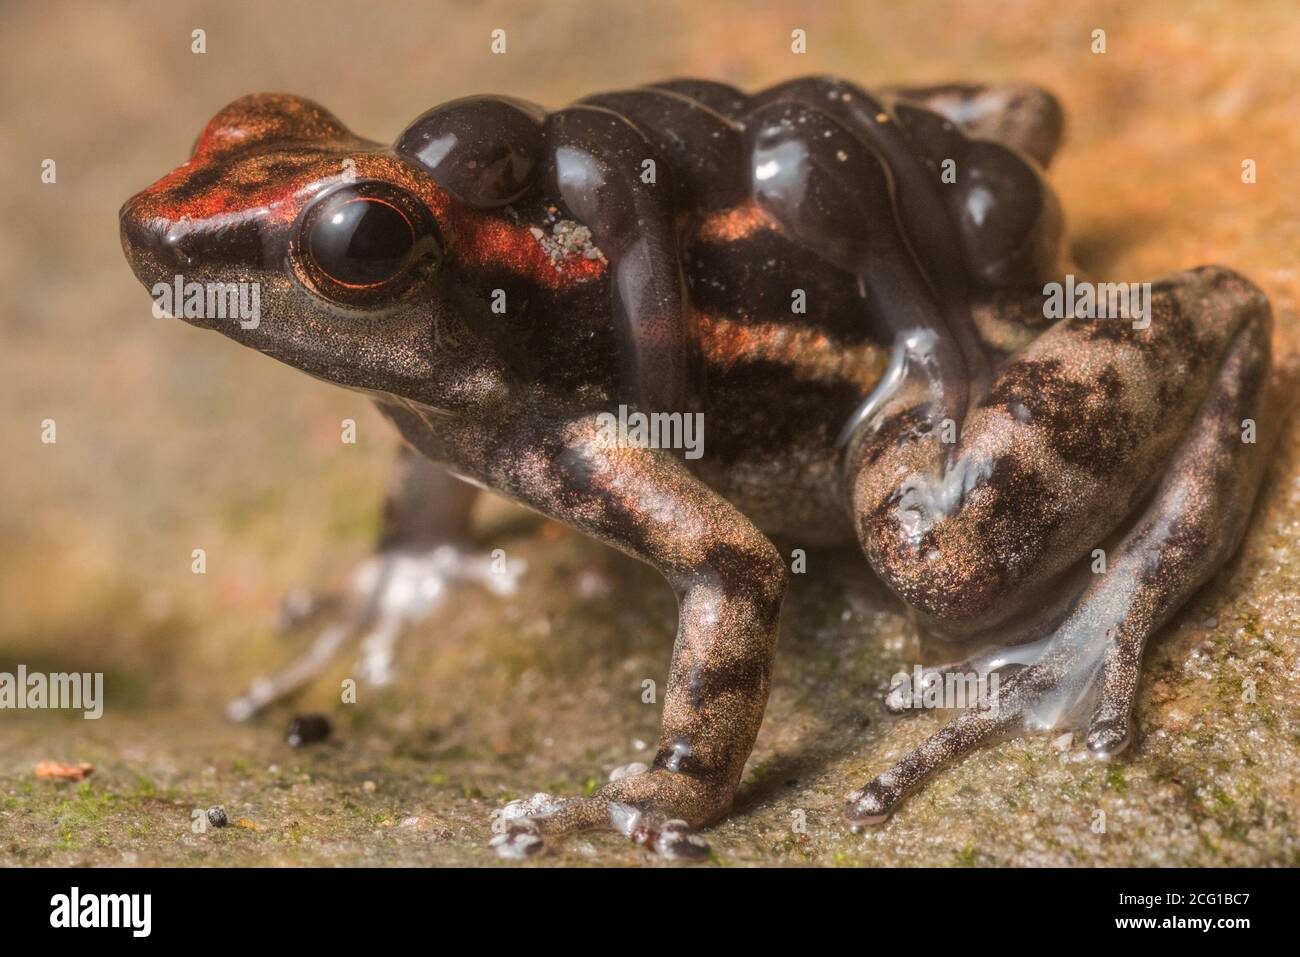 Una rana de cohetes los Tayos (Hyloxalus nexipus) una especie de rana de dardo venenoso lleva sus renacuajos en la espalda. Foto de stock